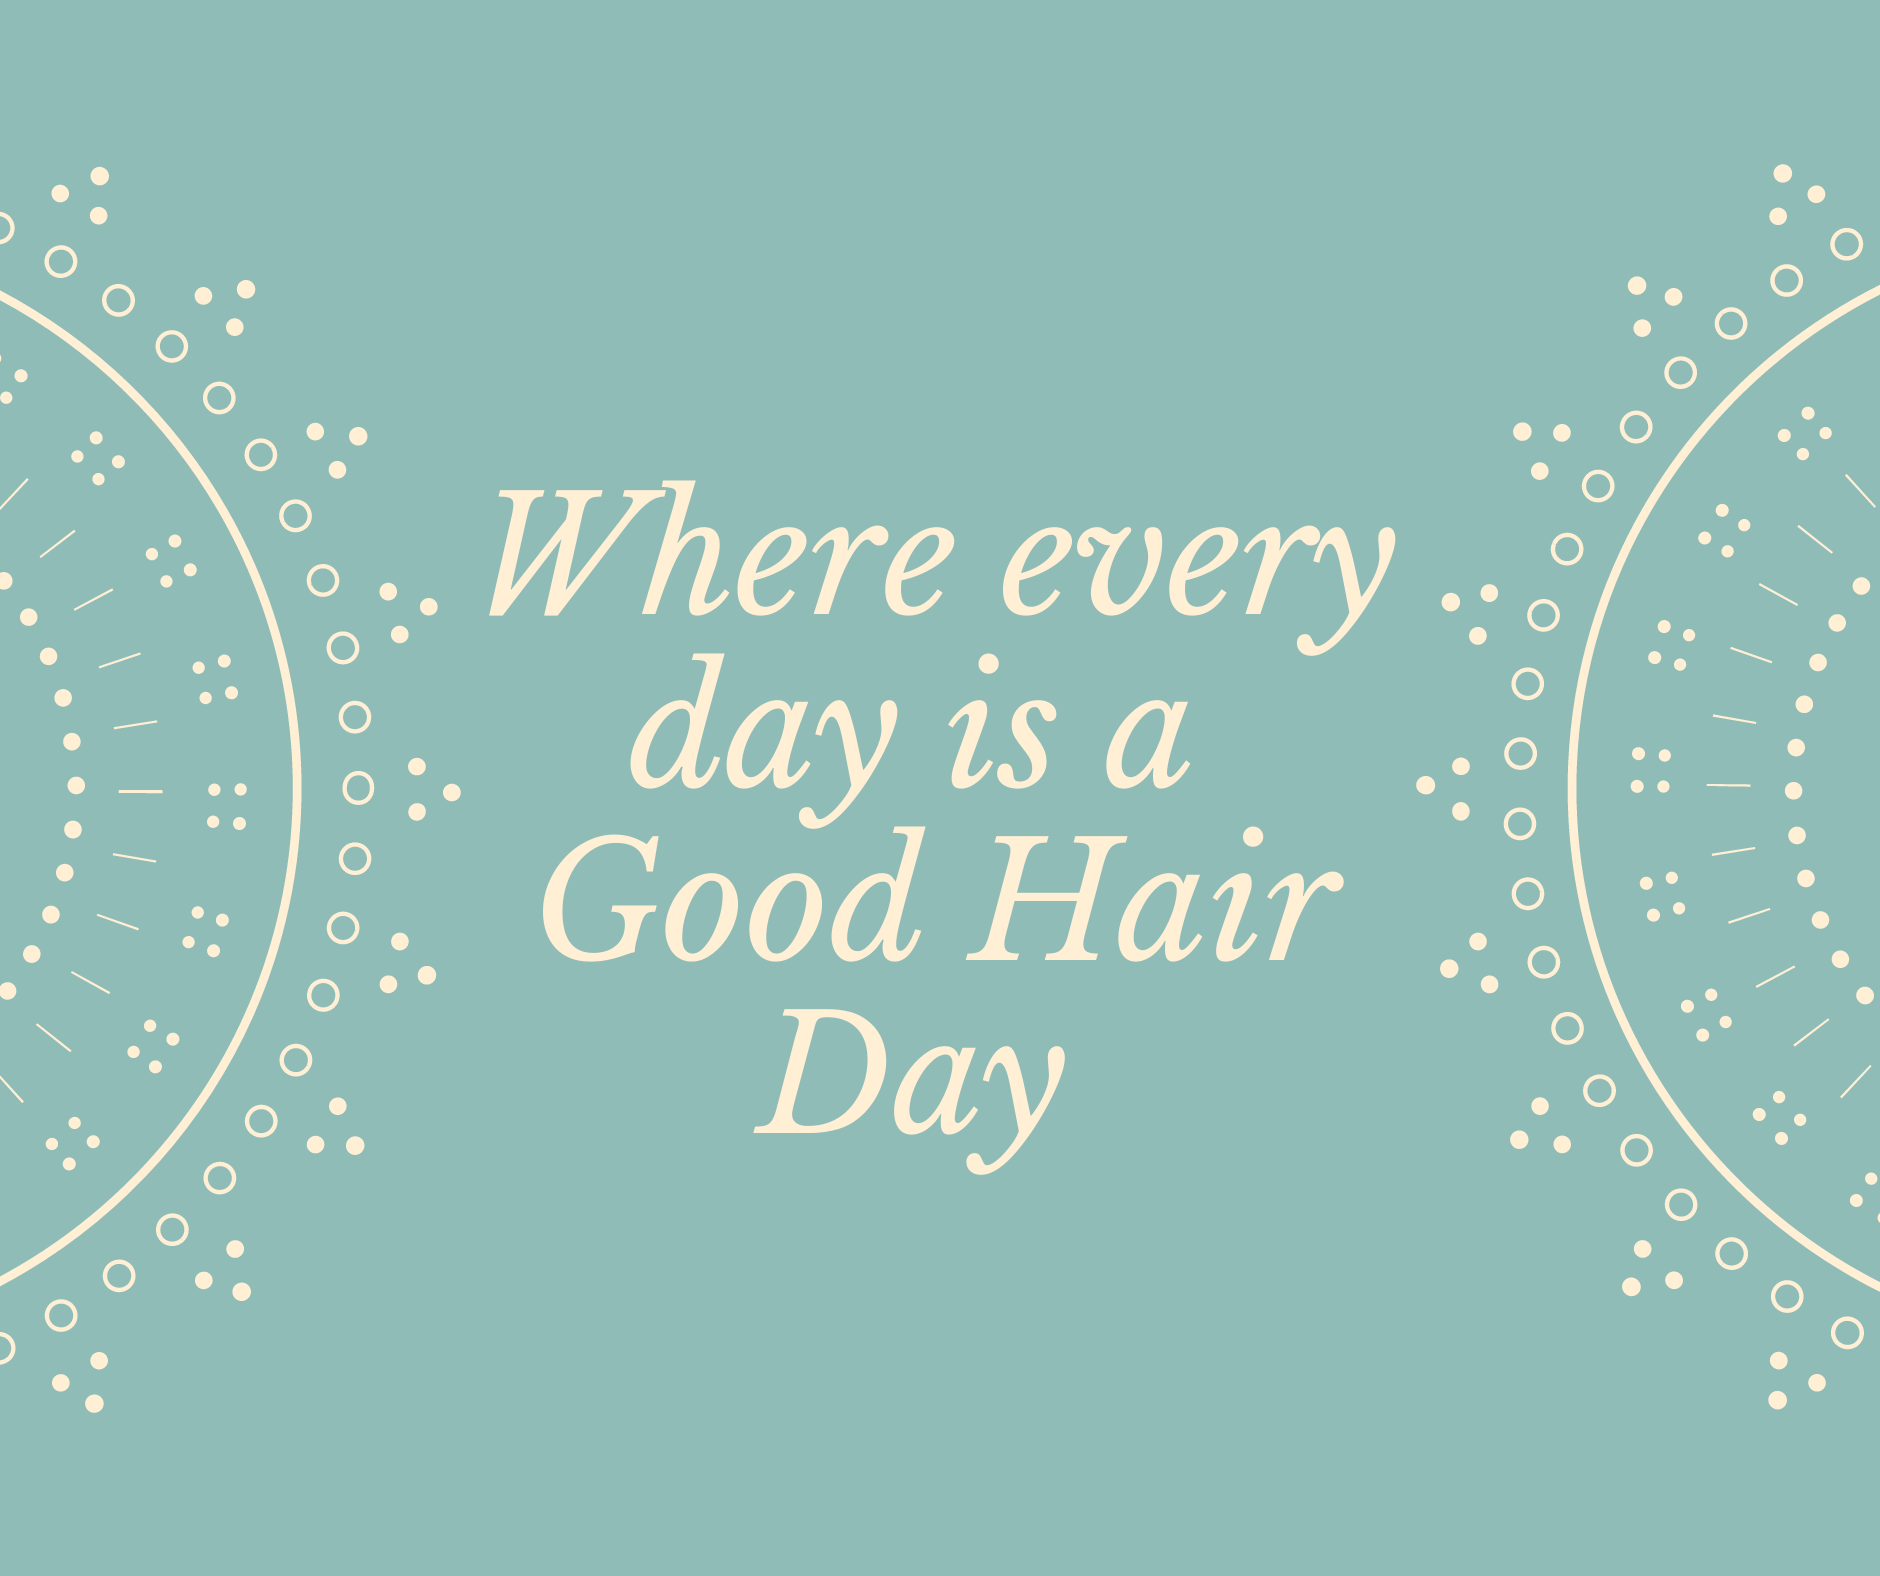 A Good Hair Day